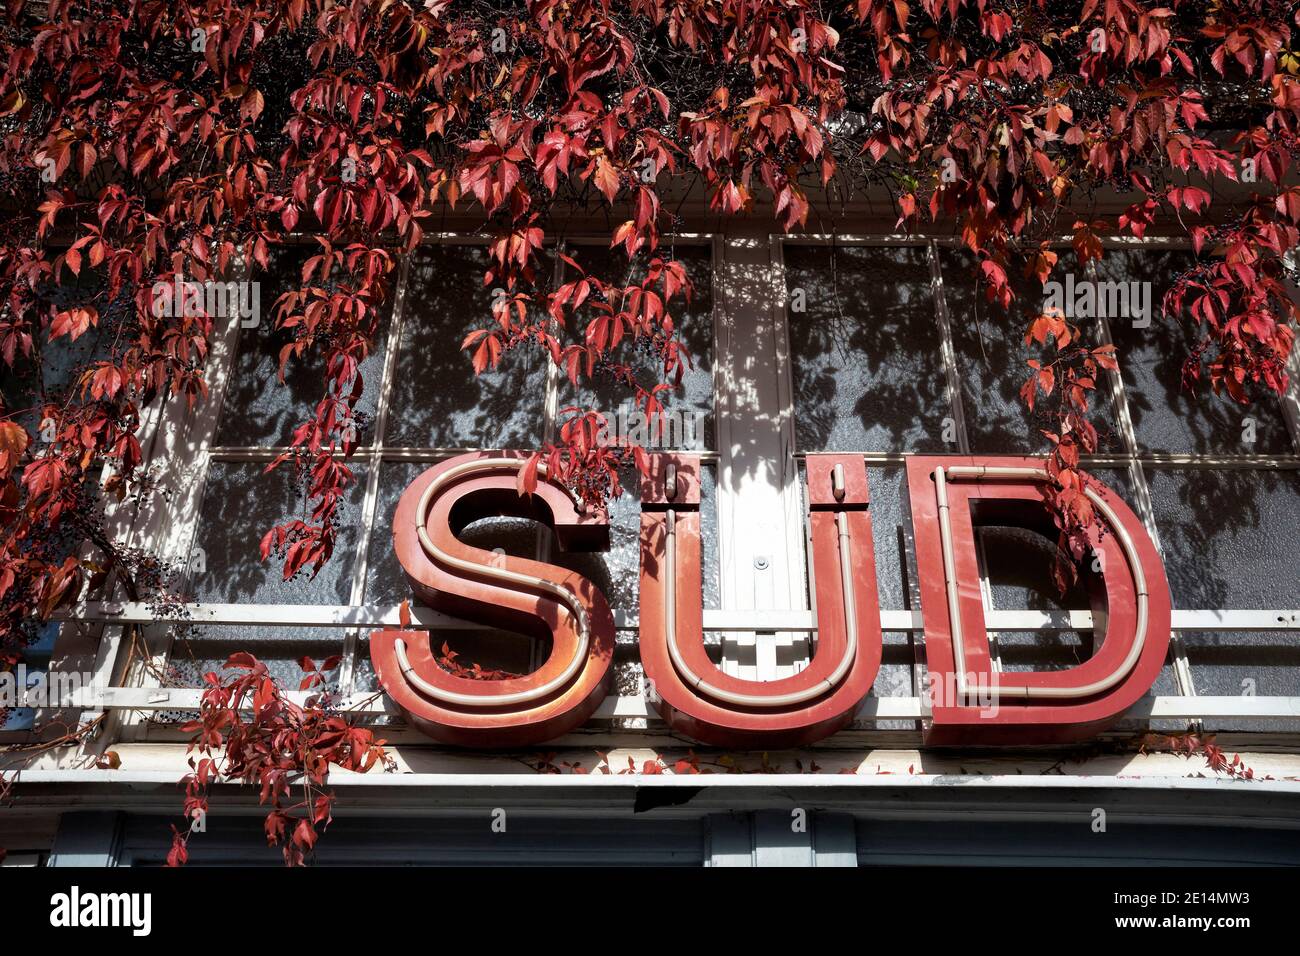 Ein von Weinlaub umwachsener Schriftzug der das Wort 'Süd' zeigt vor einer Glasscheibe mit Lichtreflexen Stock Photo